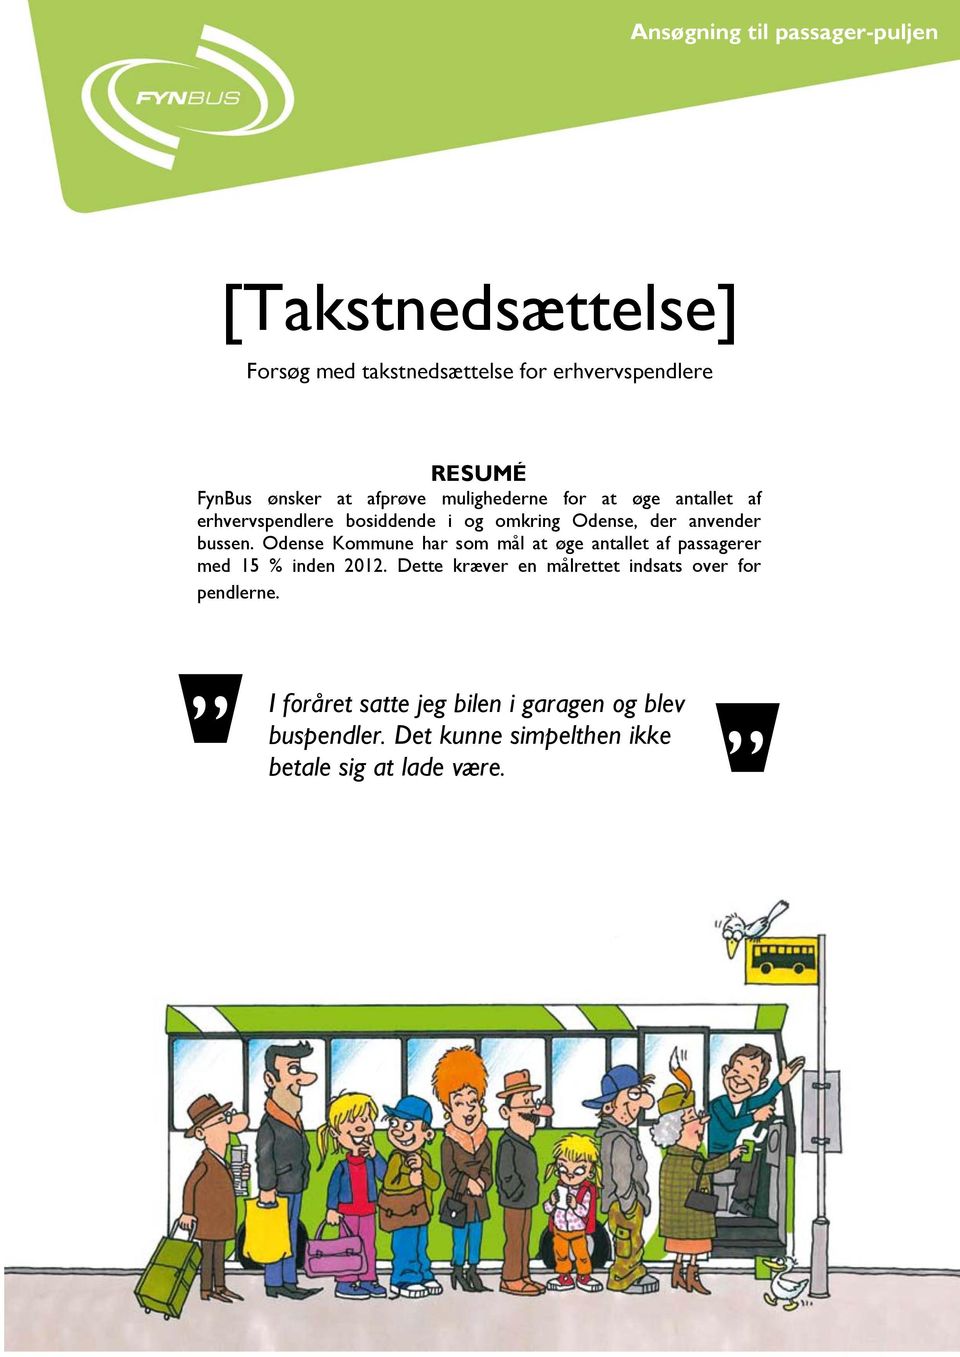 Odense Kommune har som mål at øge antallet af passagerer med 15 % inden 2012.